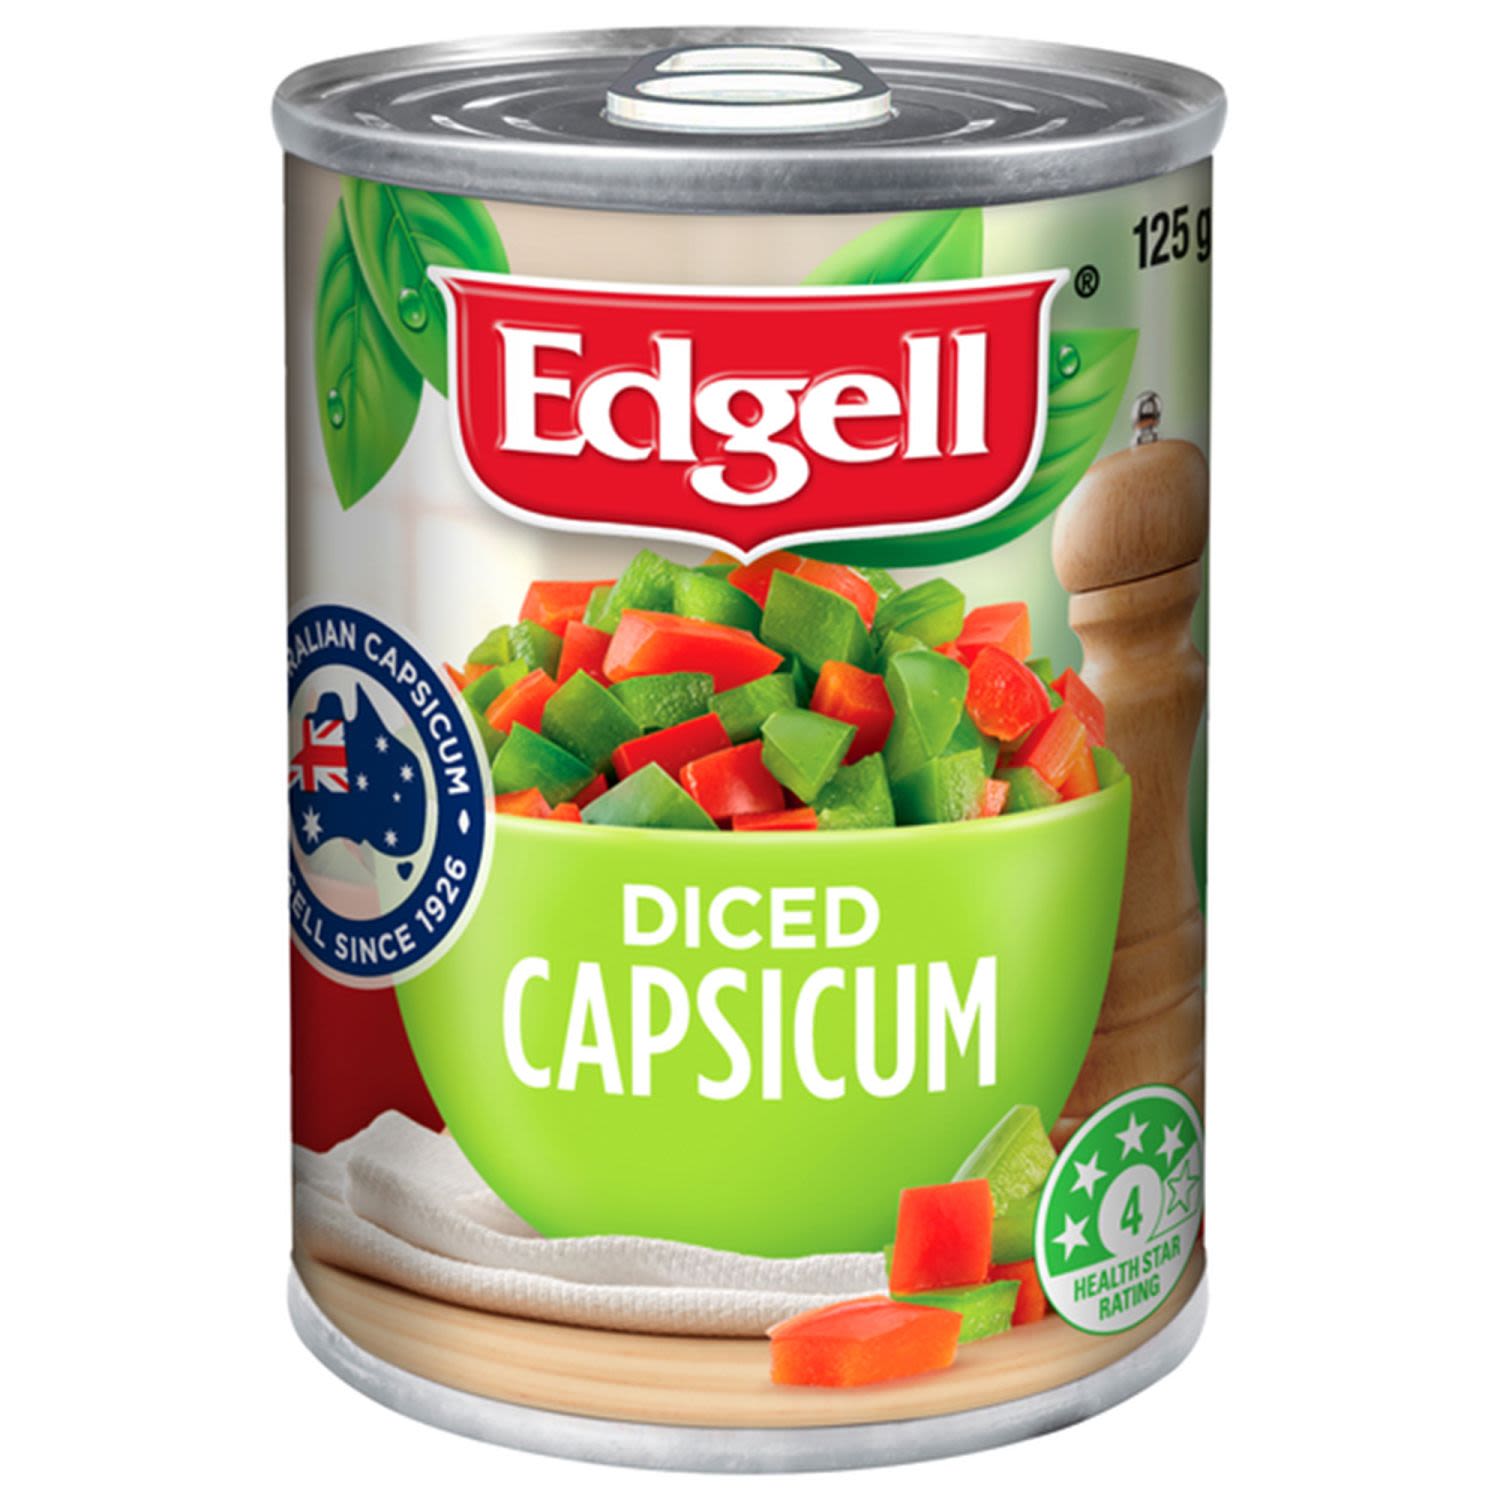 Edgell Diced Capsicum, 125 Gram